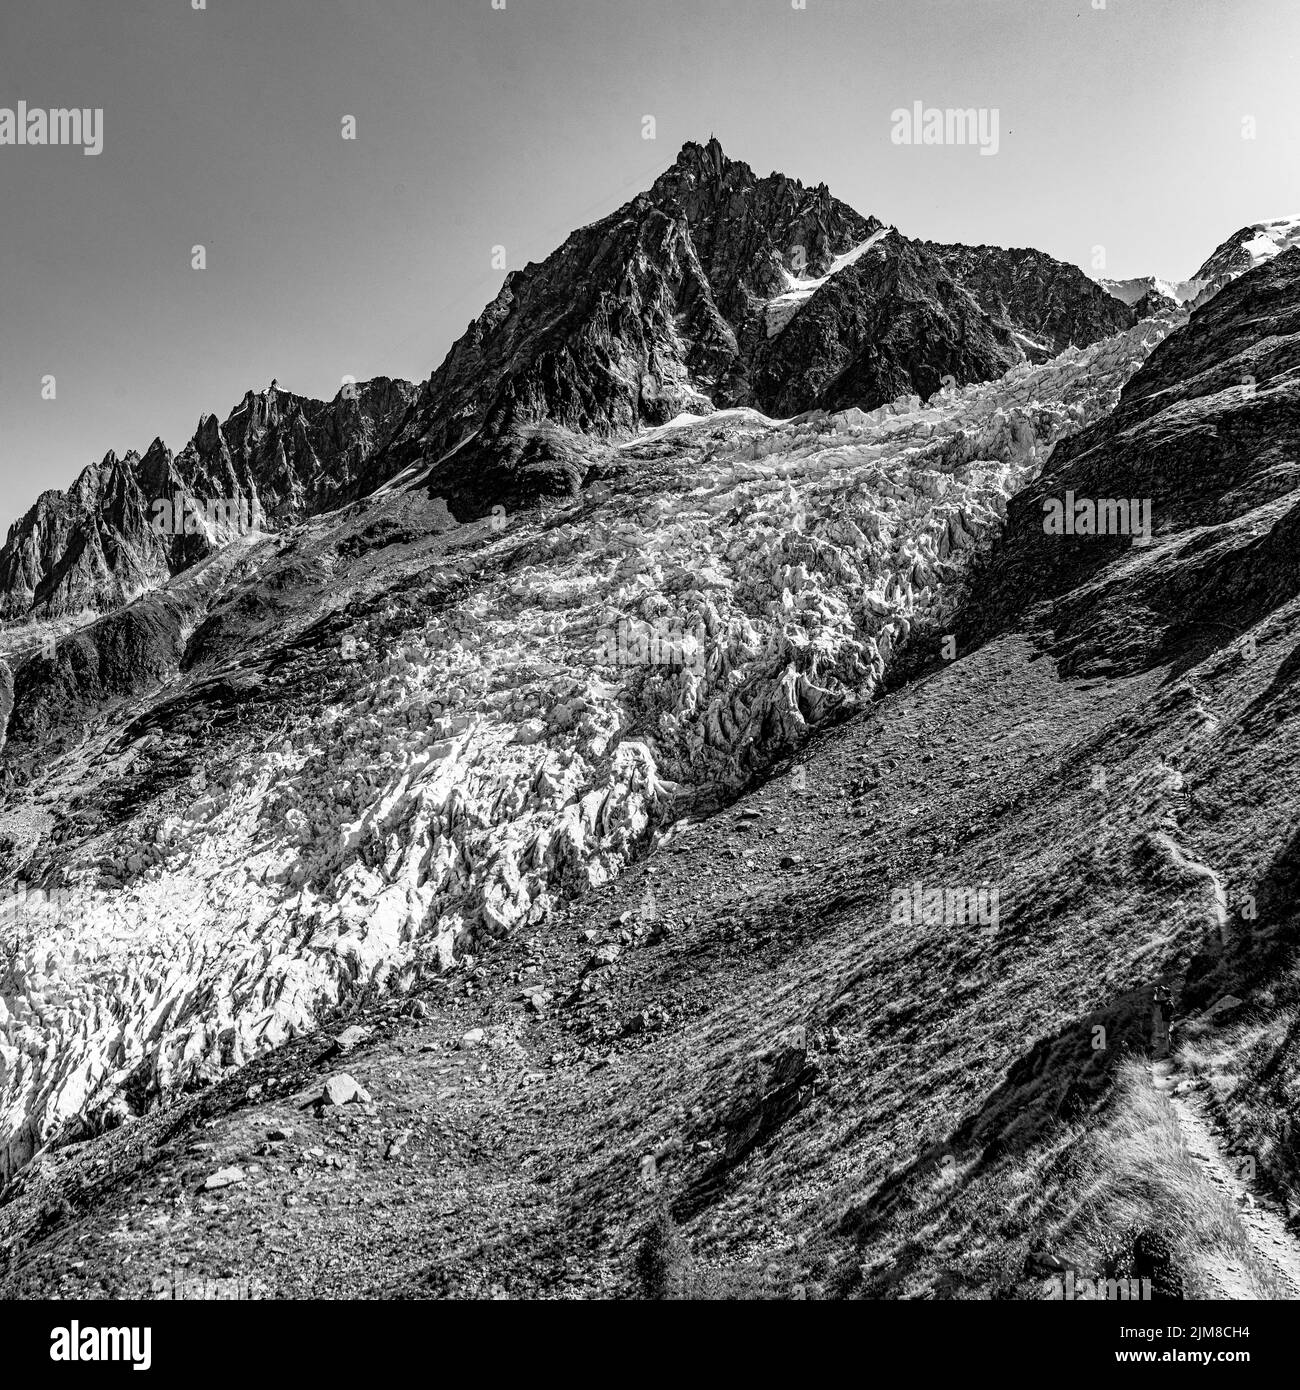 L'aiguille du Midi 3842 mètres et le Glacier des Bossons depuis la jonction. Itinéraire de la première ascension du Mont-Blanc par Balmat en 1786. Stockfoto